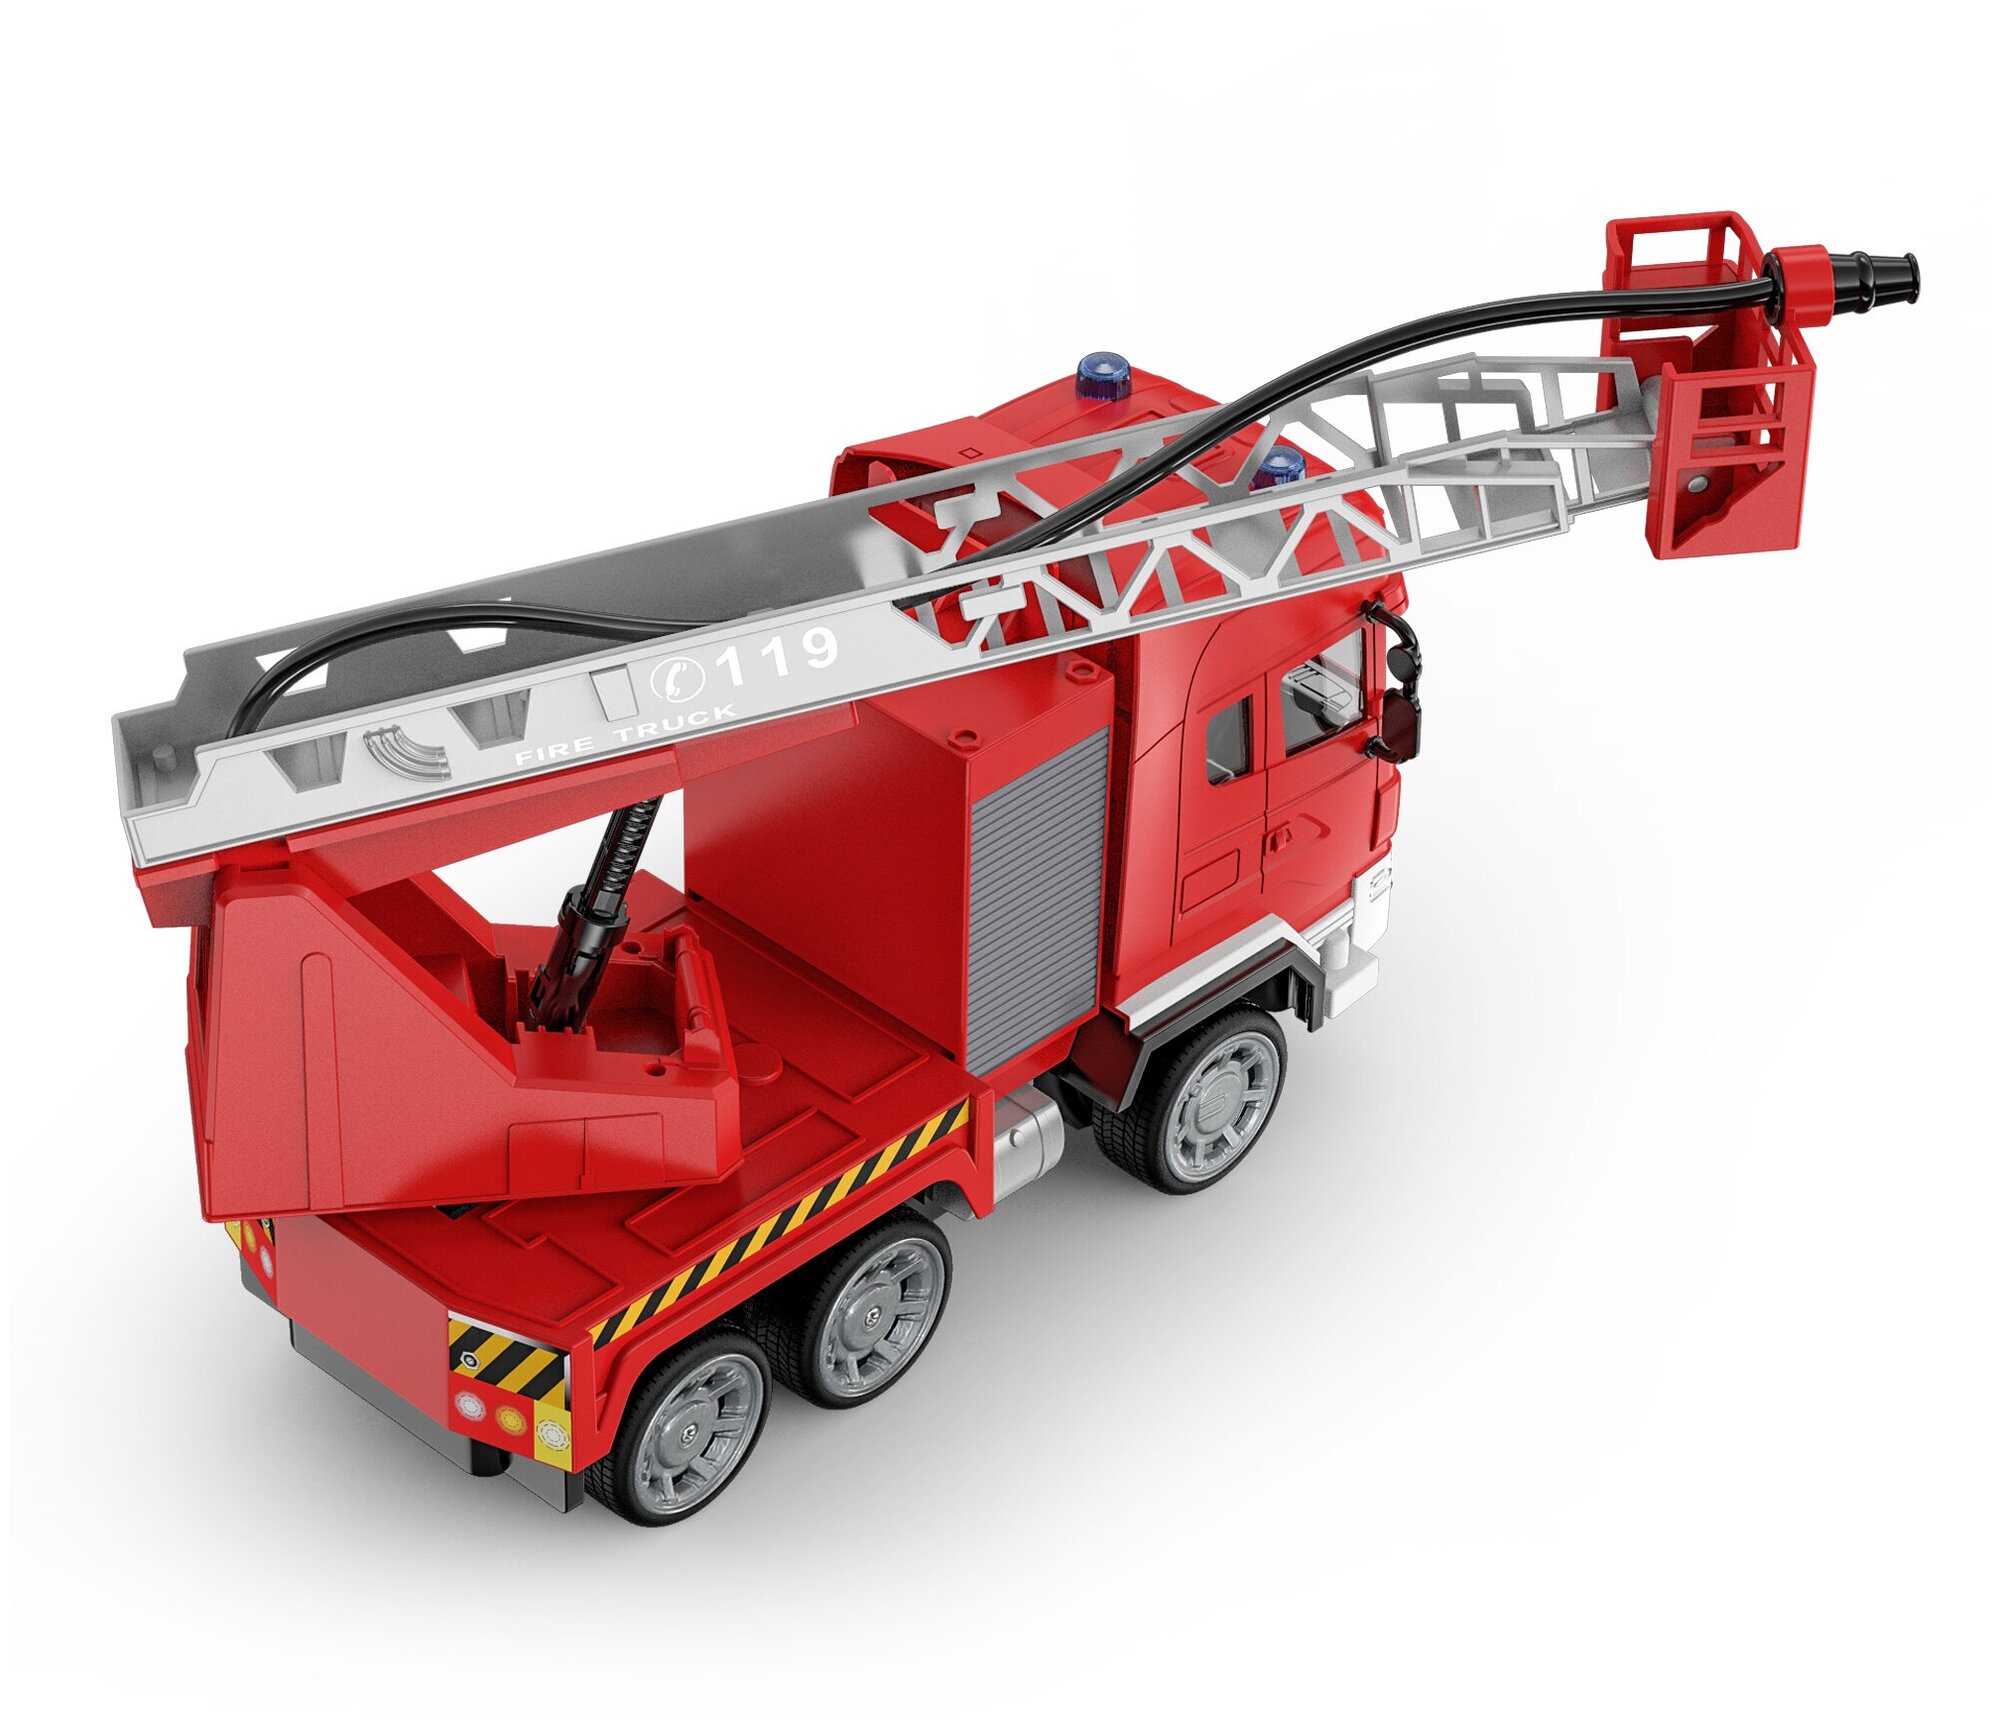 Радиоуправляемый пожарная машина Double E поливает водой 1:20 24G - E597-003